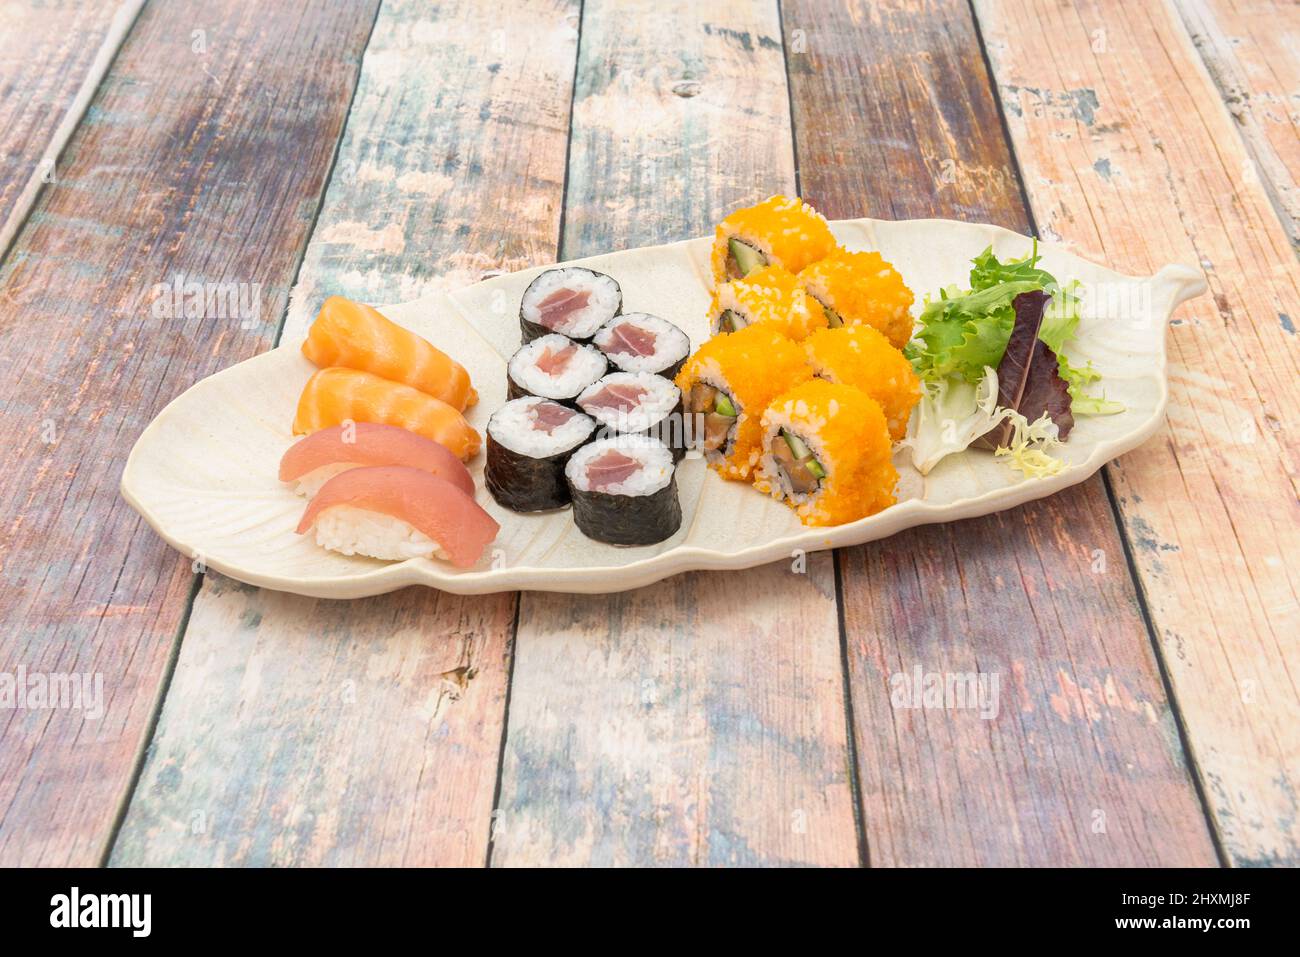 Piatto di sushi assortito, nigiri di tonno rosso, salmone norvegese, maki di tonno, rotolo di uramaki california Foto Stock